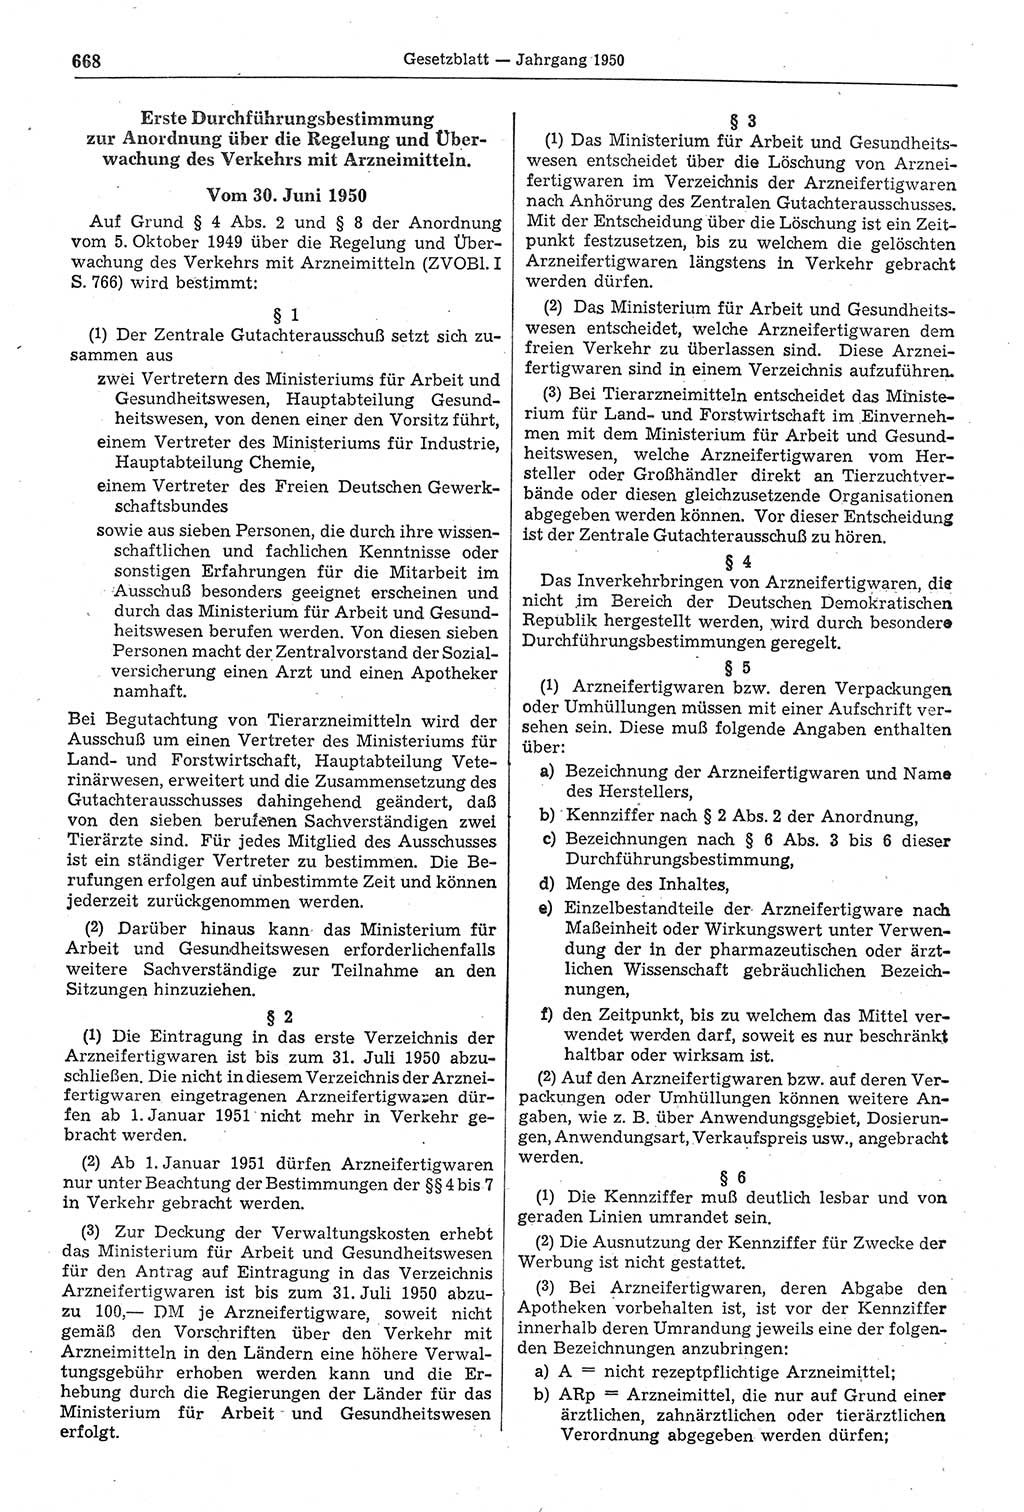 Gesetzblatt (GBl.) der Deutschen Demokratischen Republik (DDR) 1950, Seite 668 (GBl. DDR 1950, S. 668)